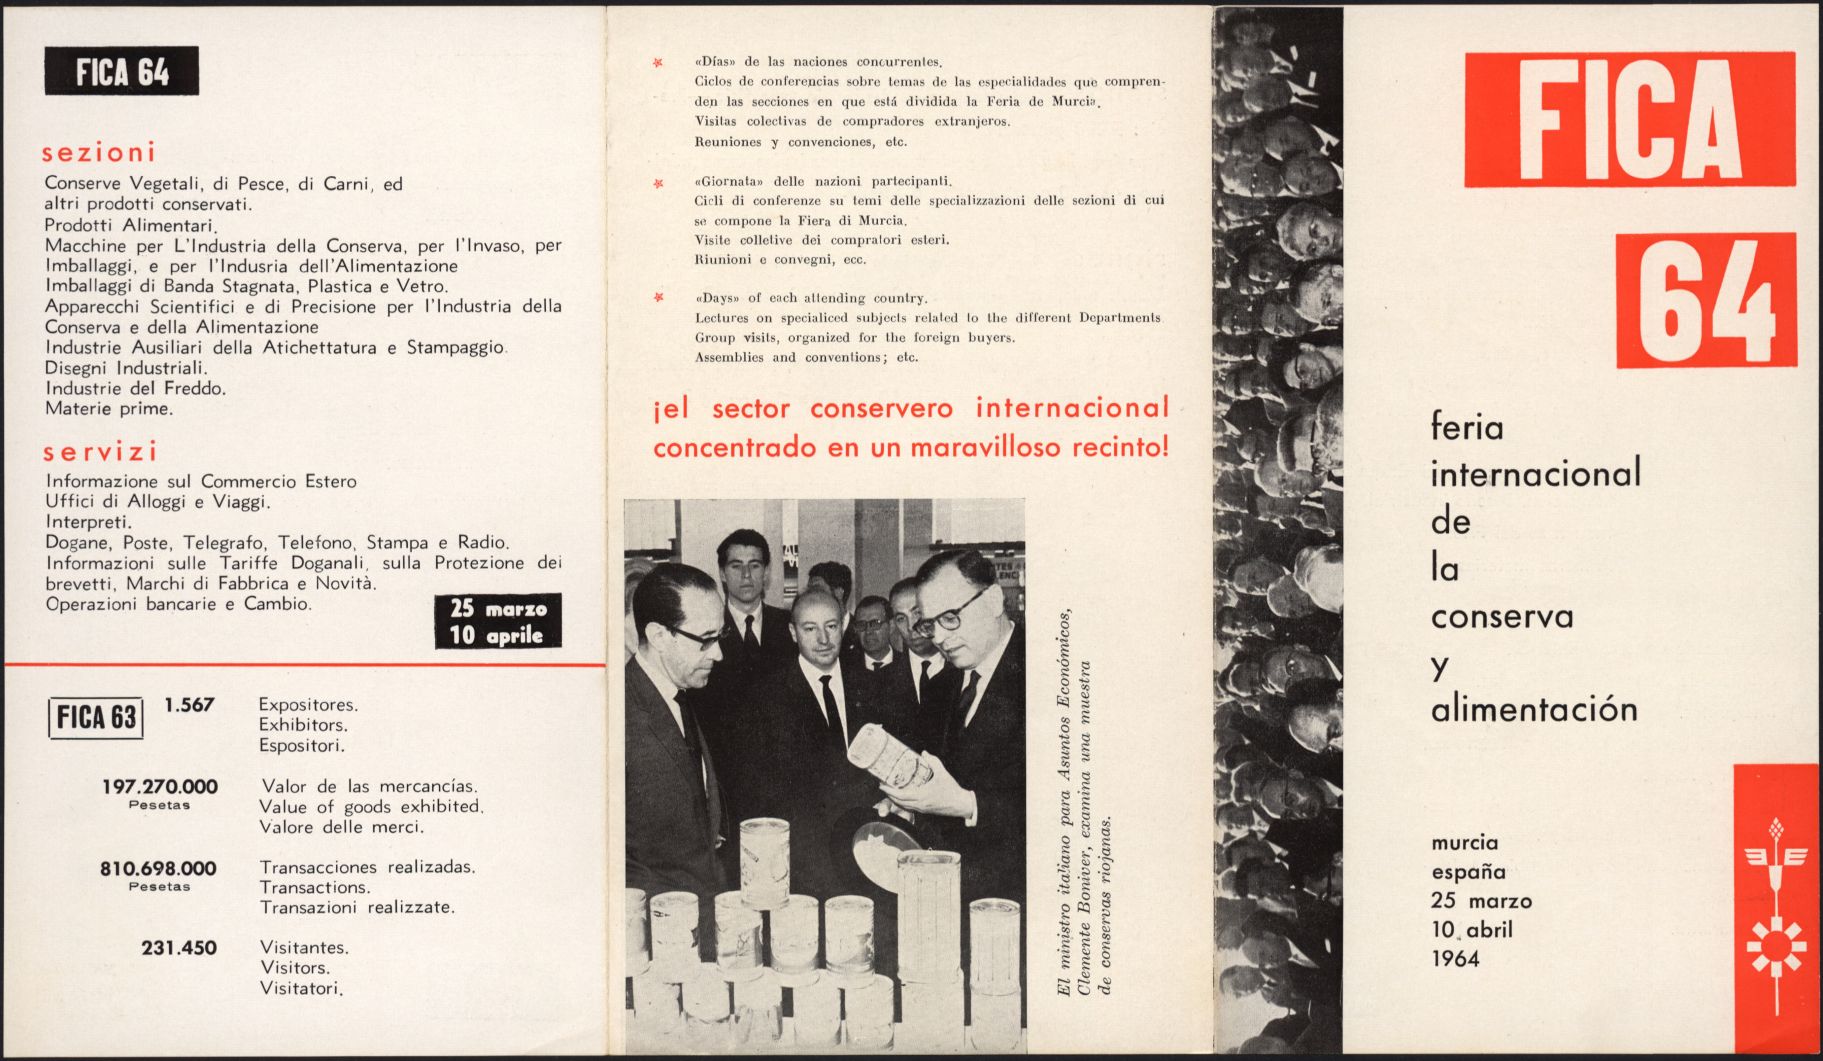 Folletos, invitaciones, cédulas de identidad, postales, banderolas y fotografía de la III Feria Internacional de la Conserva y Alimentación. Año 1964.